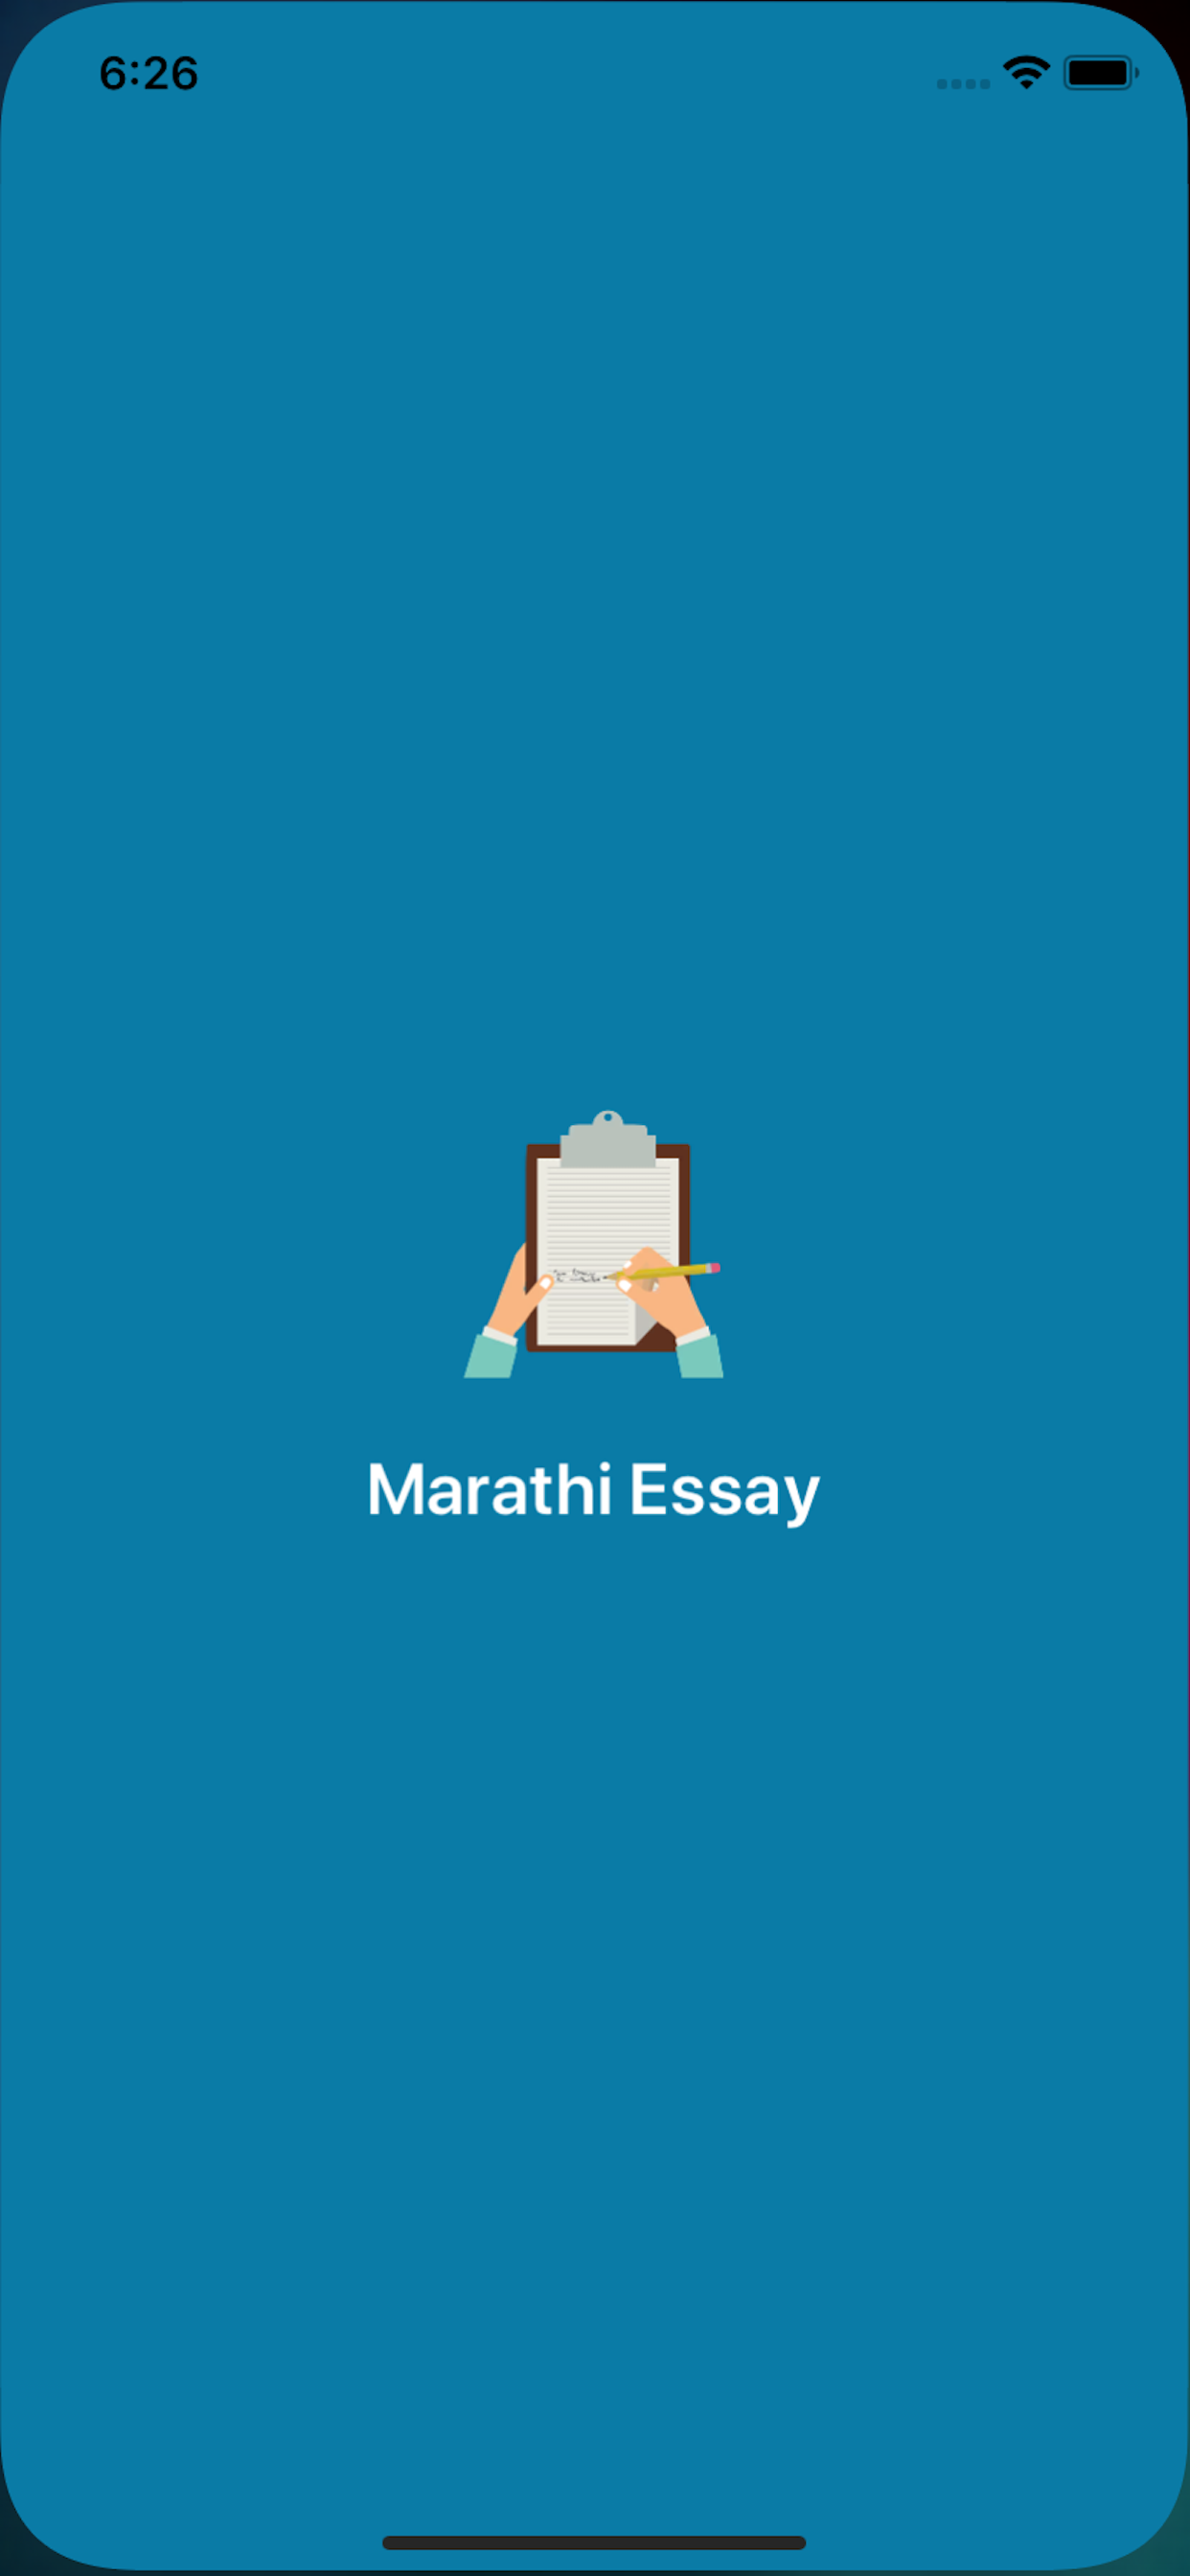 Marathi-Essay-Application